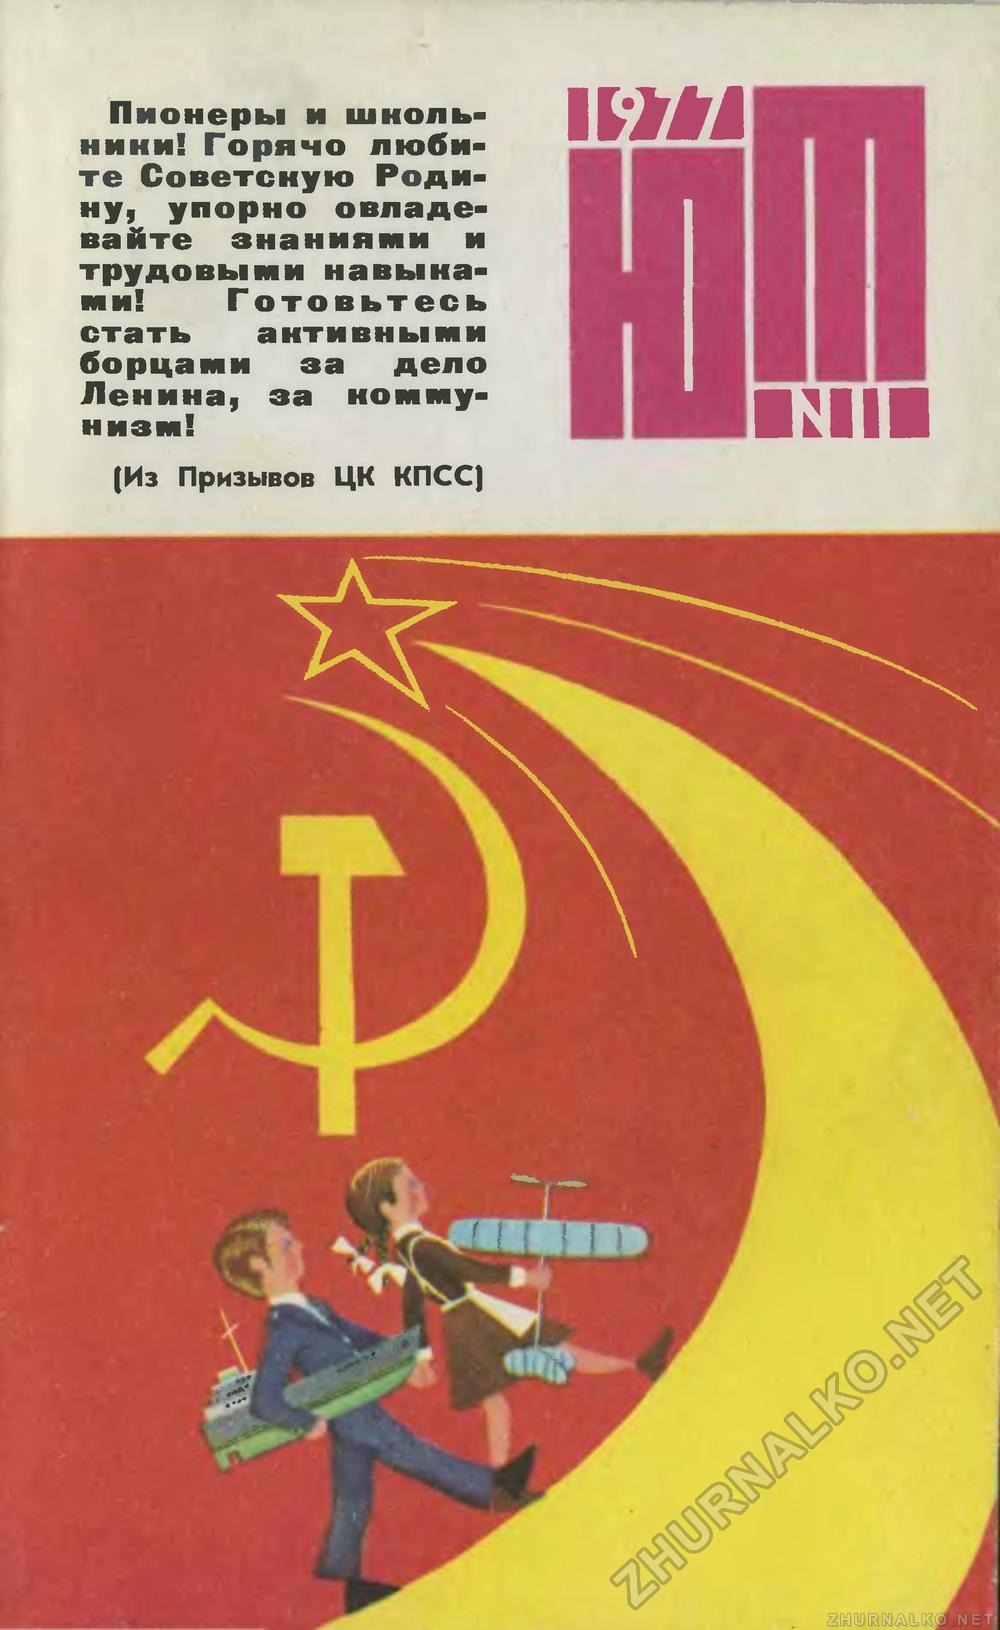   1977-11,  1